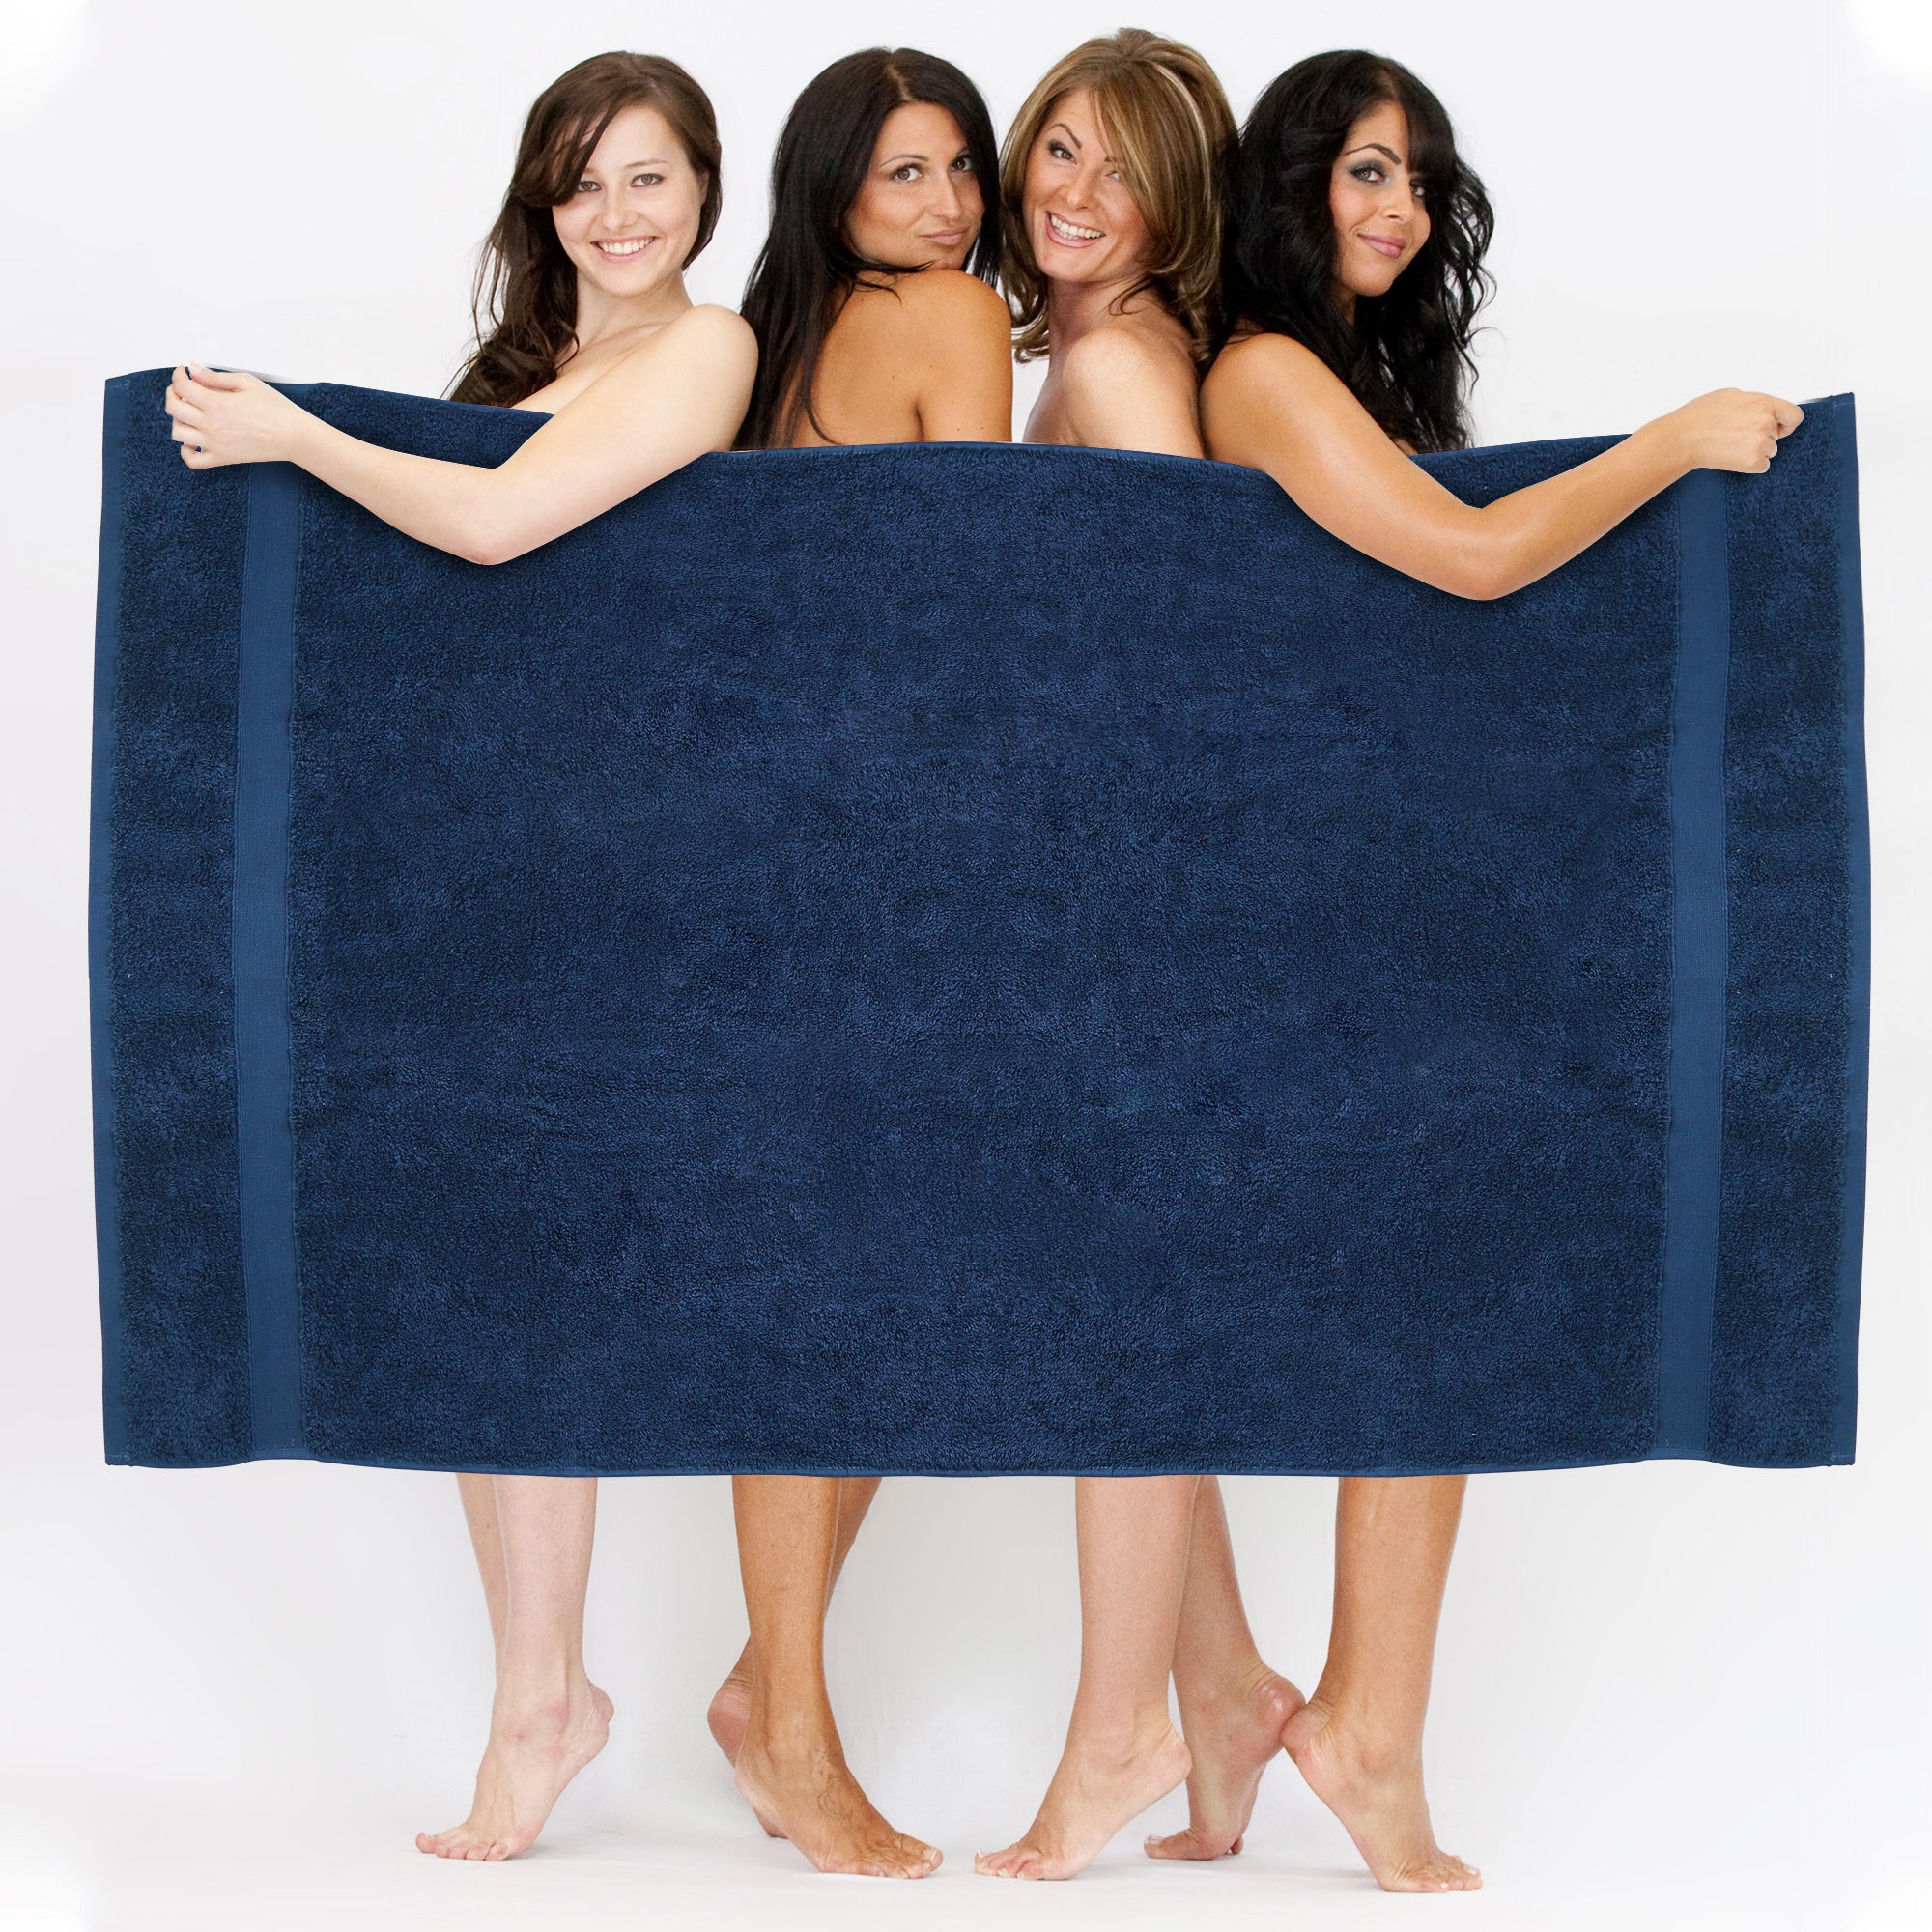 2 Pcs Jumbo Extra Large Bath Sheets Sets 90x180cm 8 Colors 550 GSM 100% Cotton